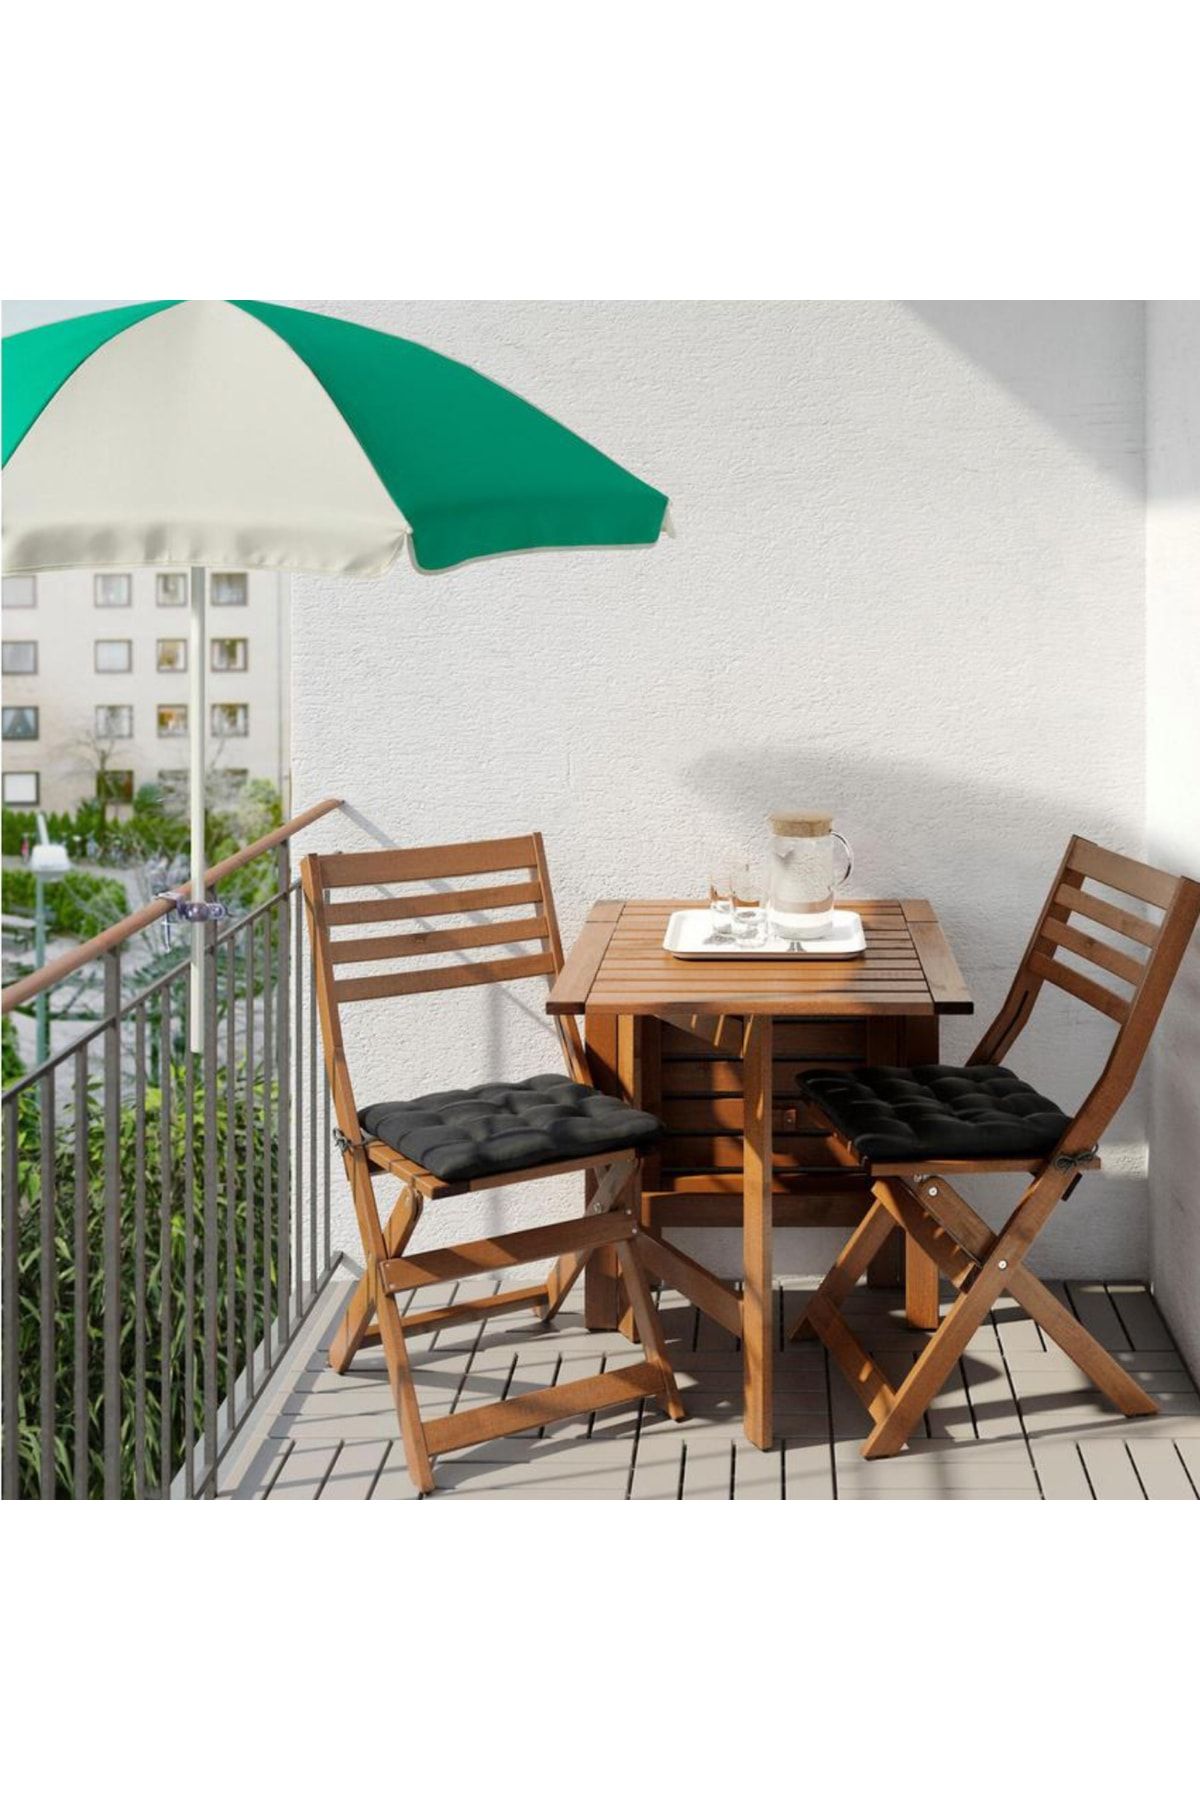 IKEA Ramsö Mandallı Uv Korumalı Balkon Masa Şezlong Güneş Şemsiyesi Yeşil Gri Çap 125 cm